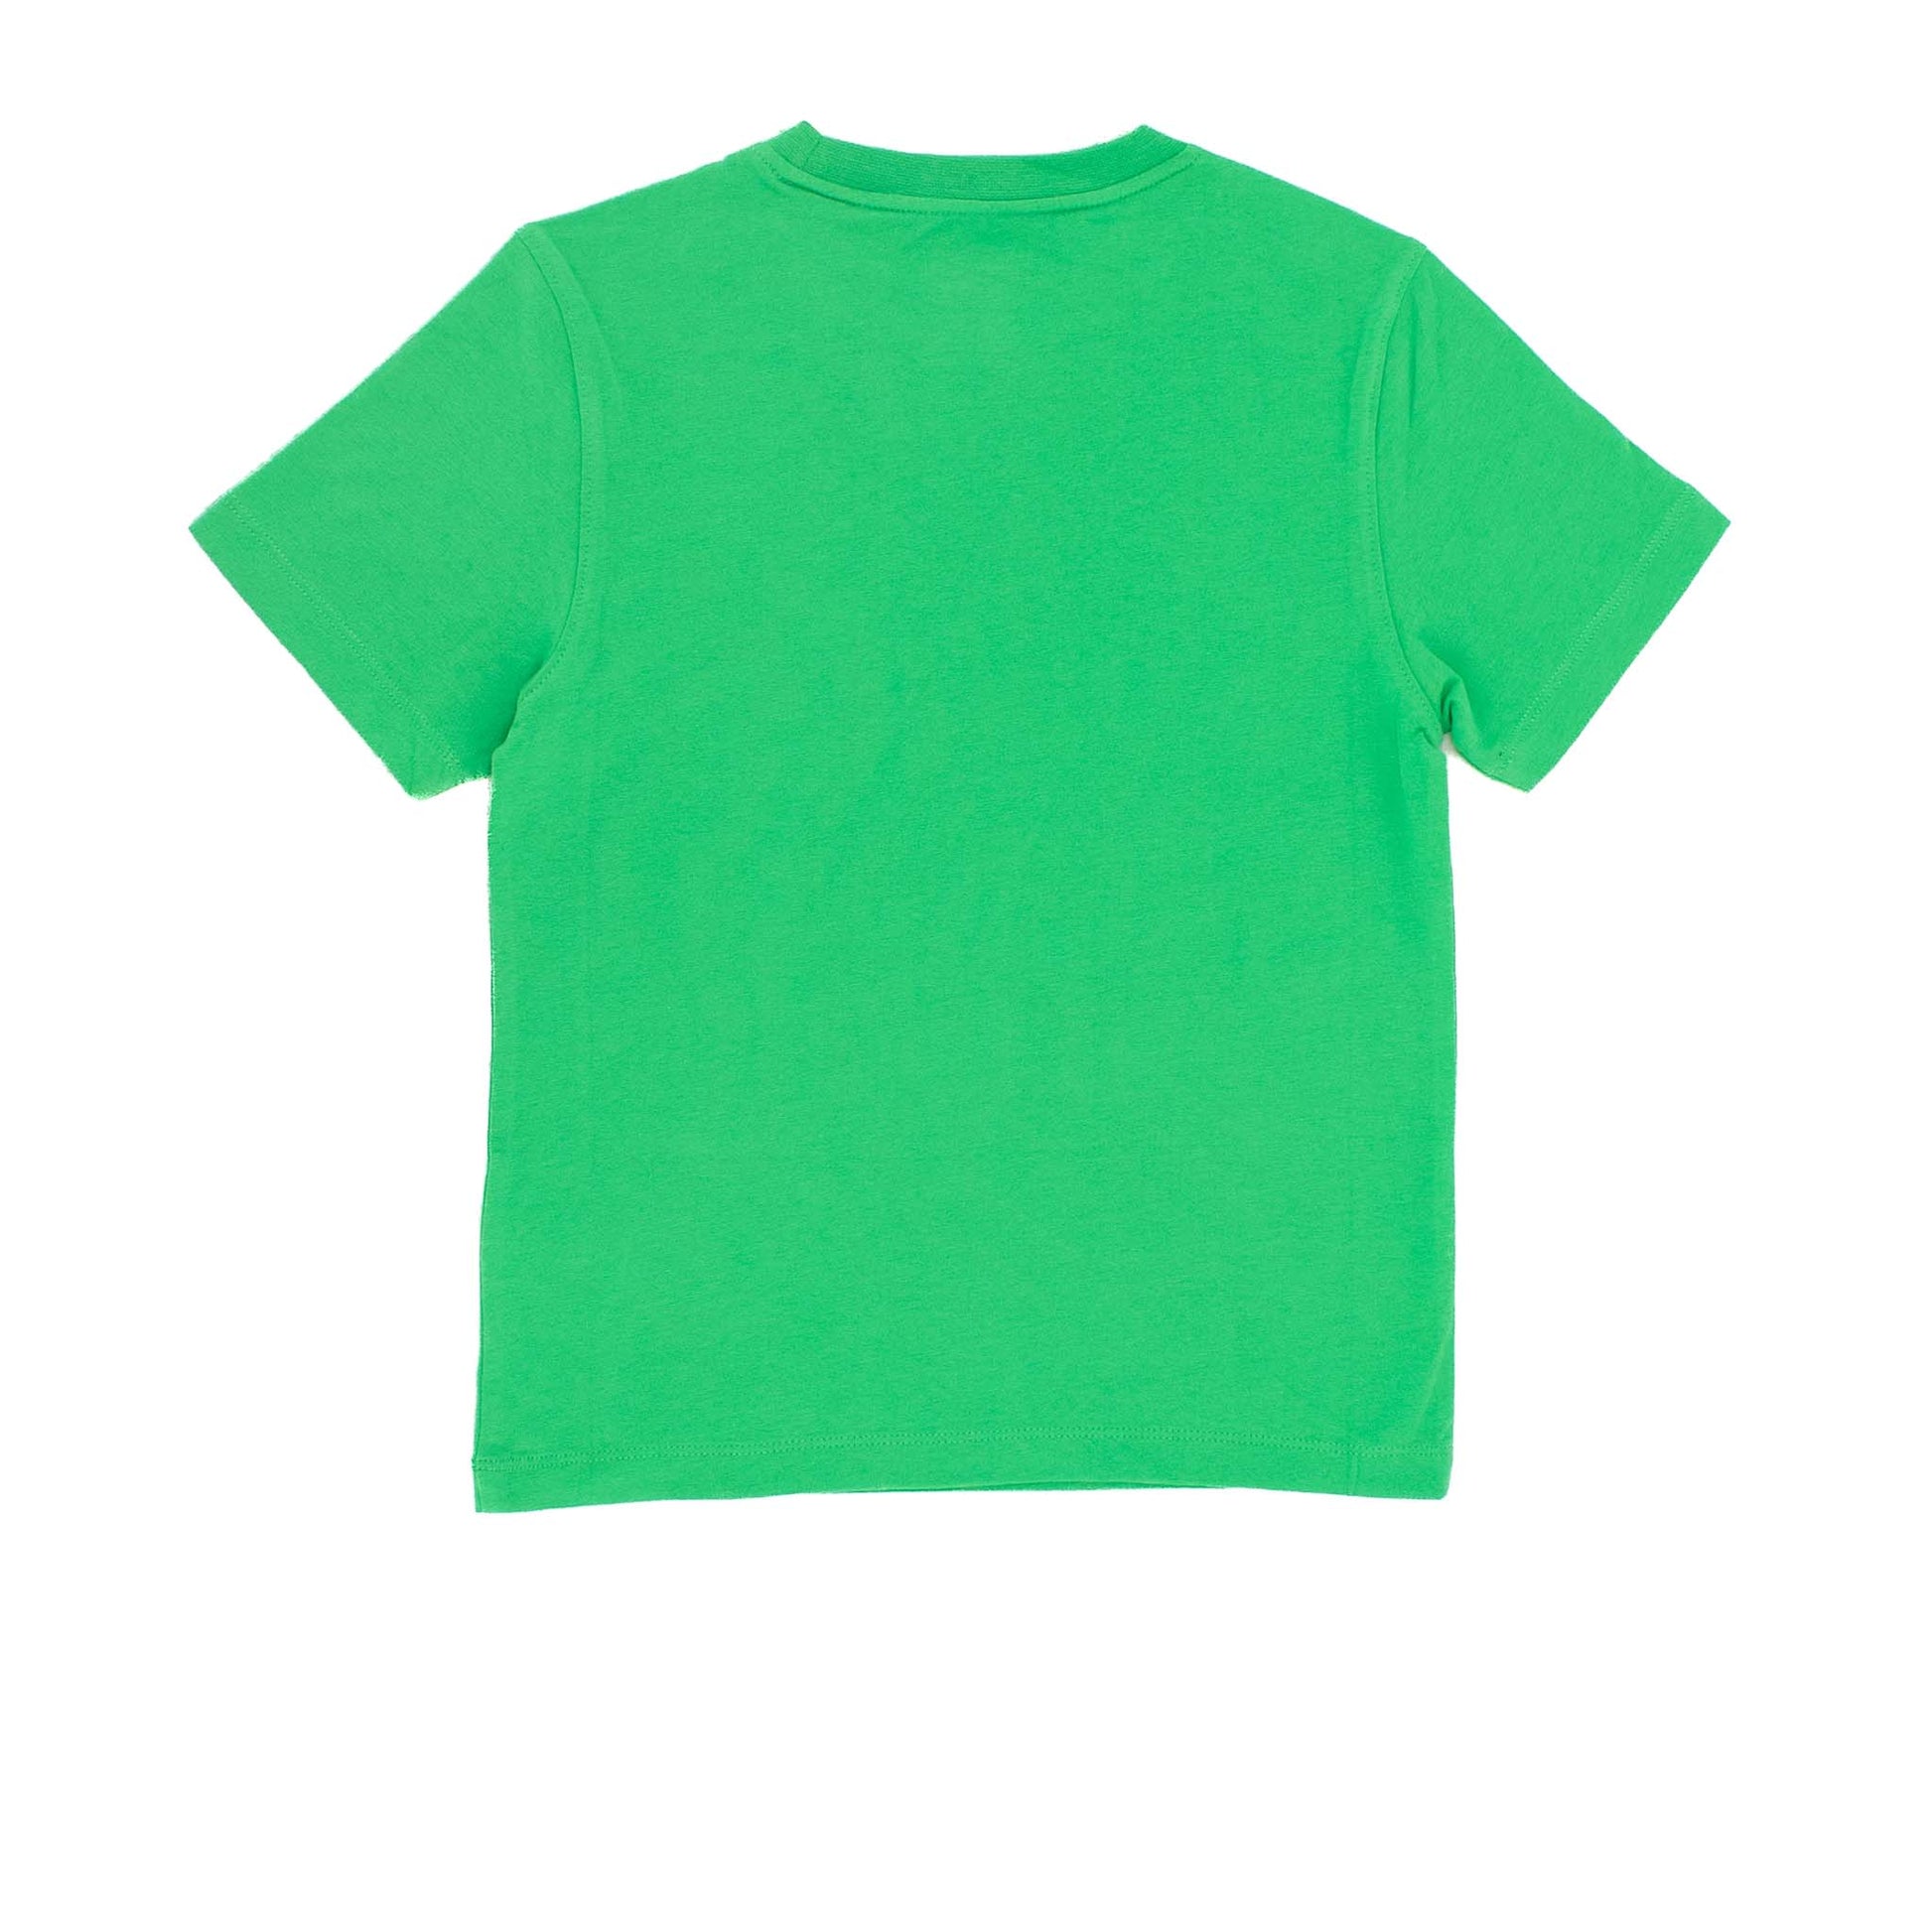 Jack Wolfskin Sunset Oc Shirt Kinder T-Shirt kurzarm Shirt 1605181-4085-2